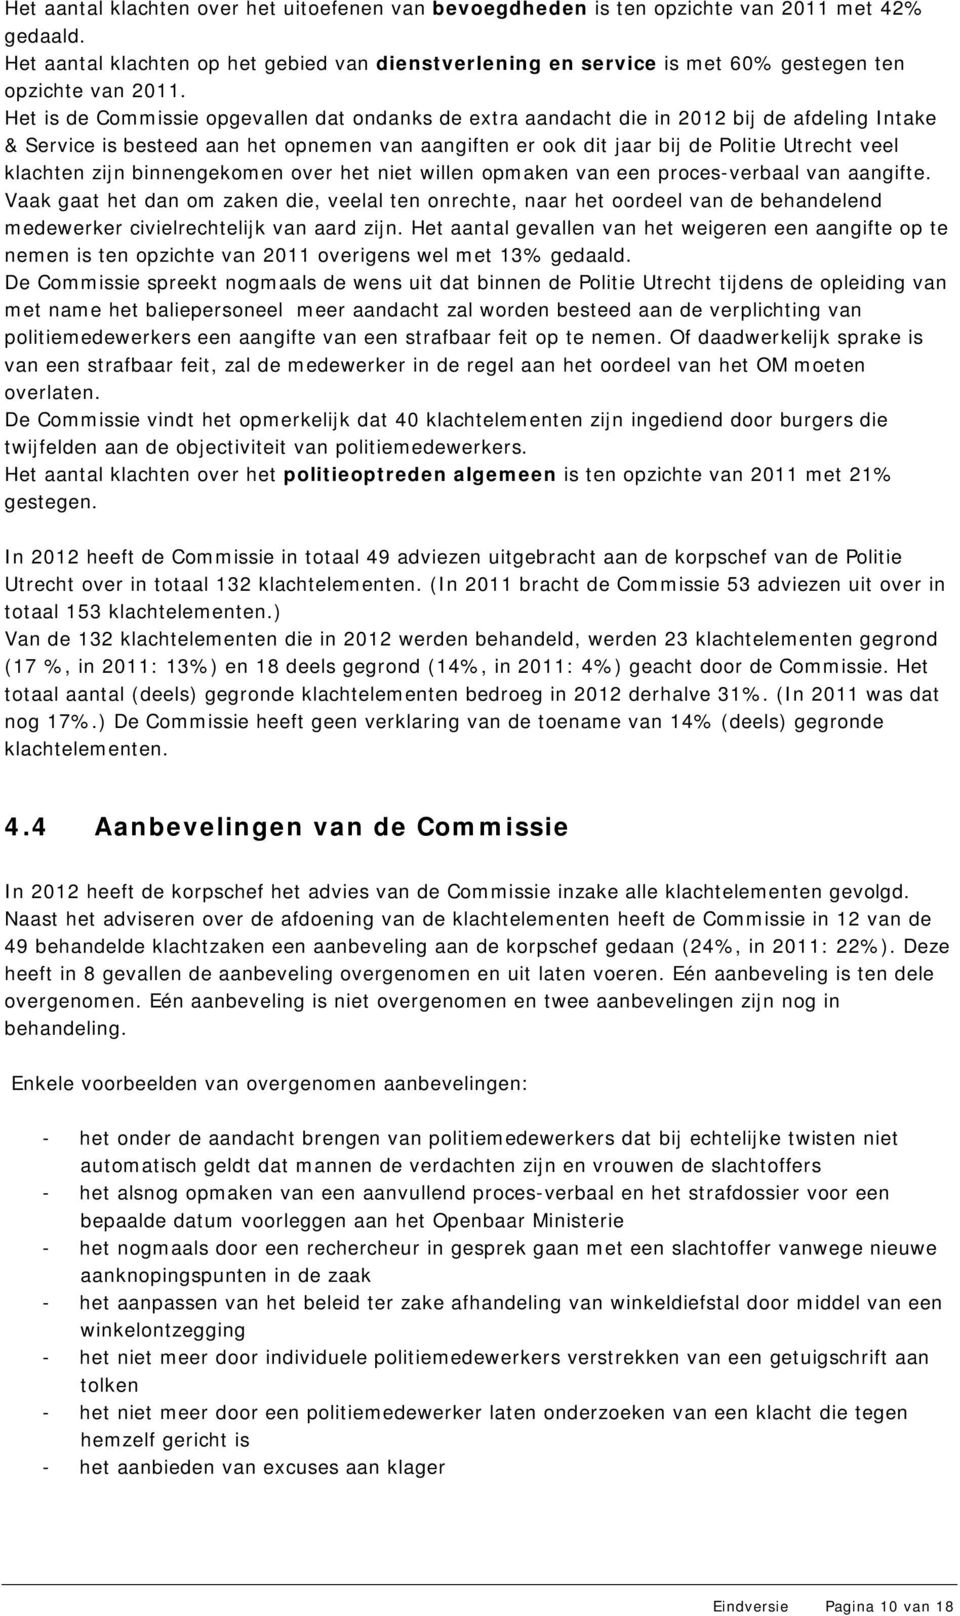 Het is de Commissie opgevallen dat ondanks de extra aandacht die in 2012 bij de afdeling Intake & Service is besteed aan het opnemen van aangiften er ook dit jaar bij de Politie Utrecht veel klachten